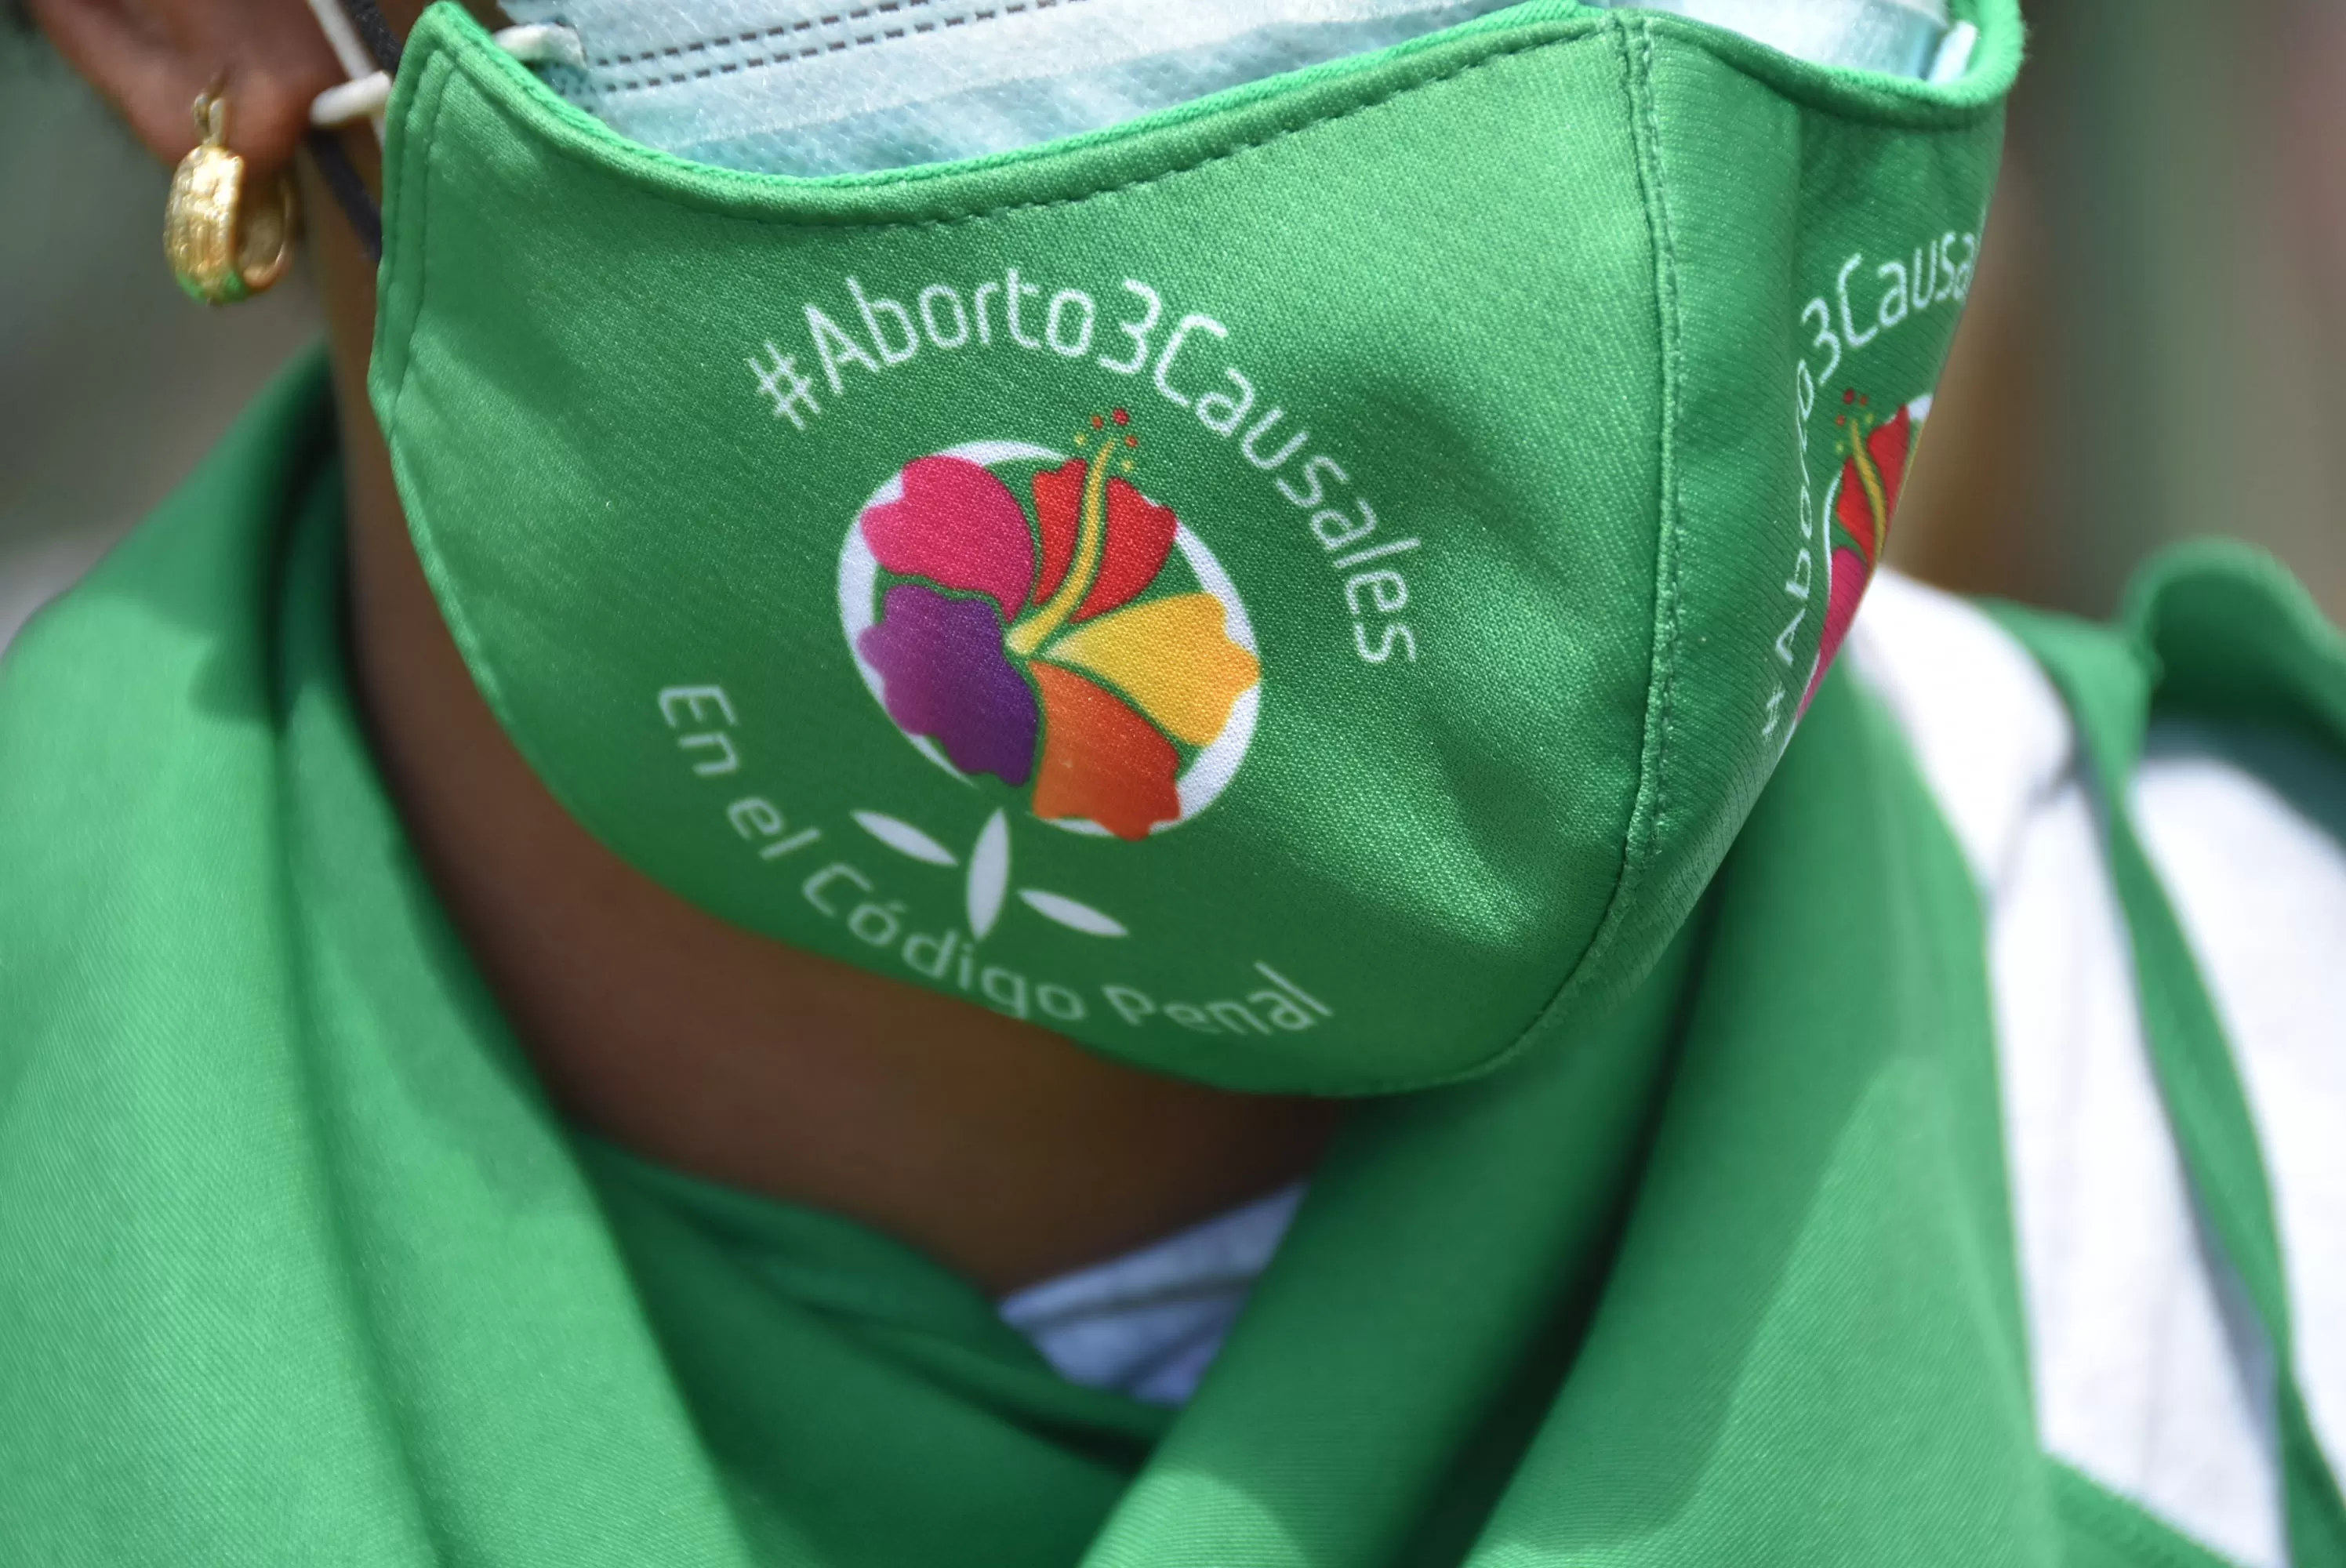 Obispos dominicanos rechazan el aborto que defiende el presidente del país